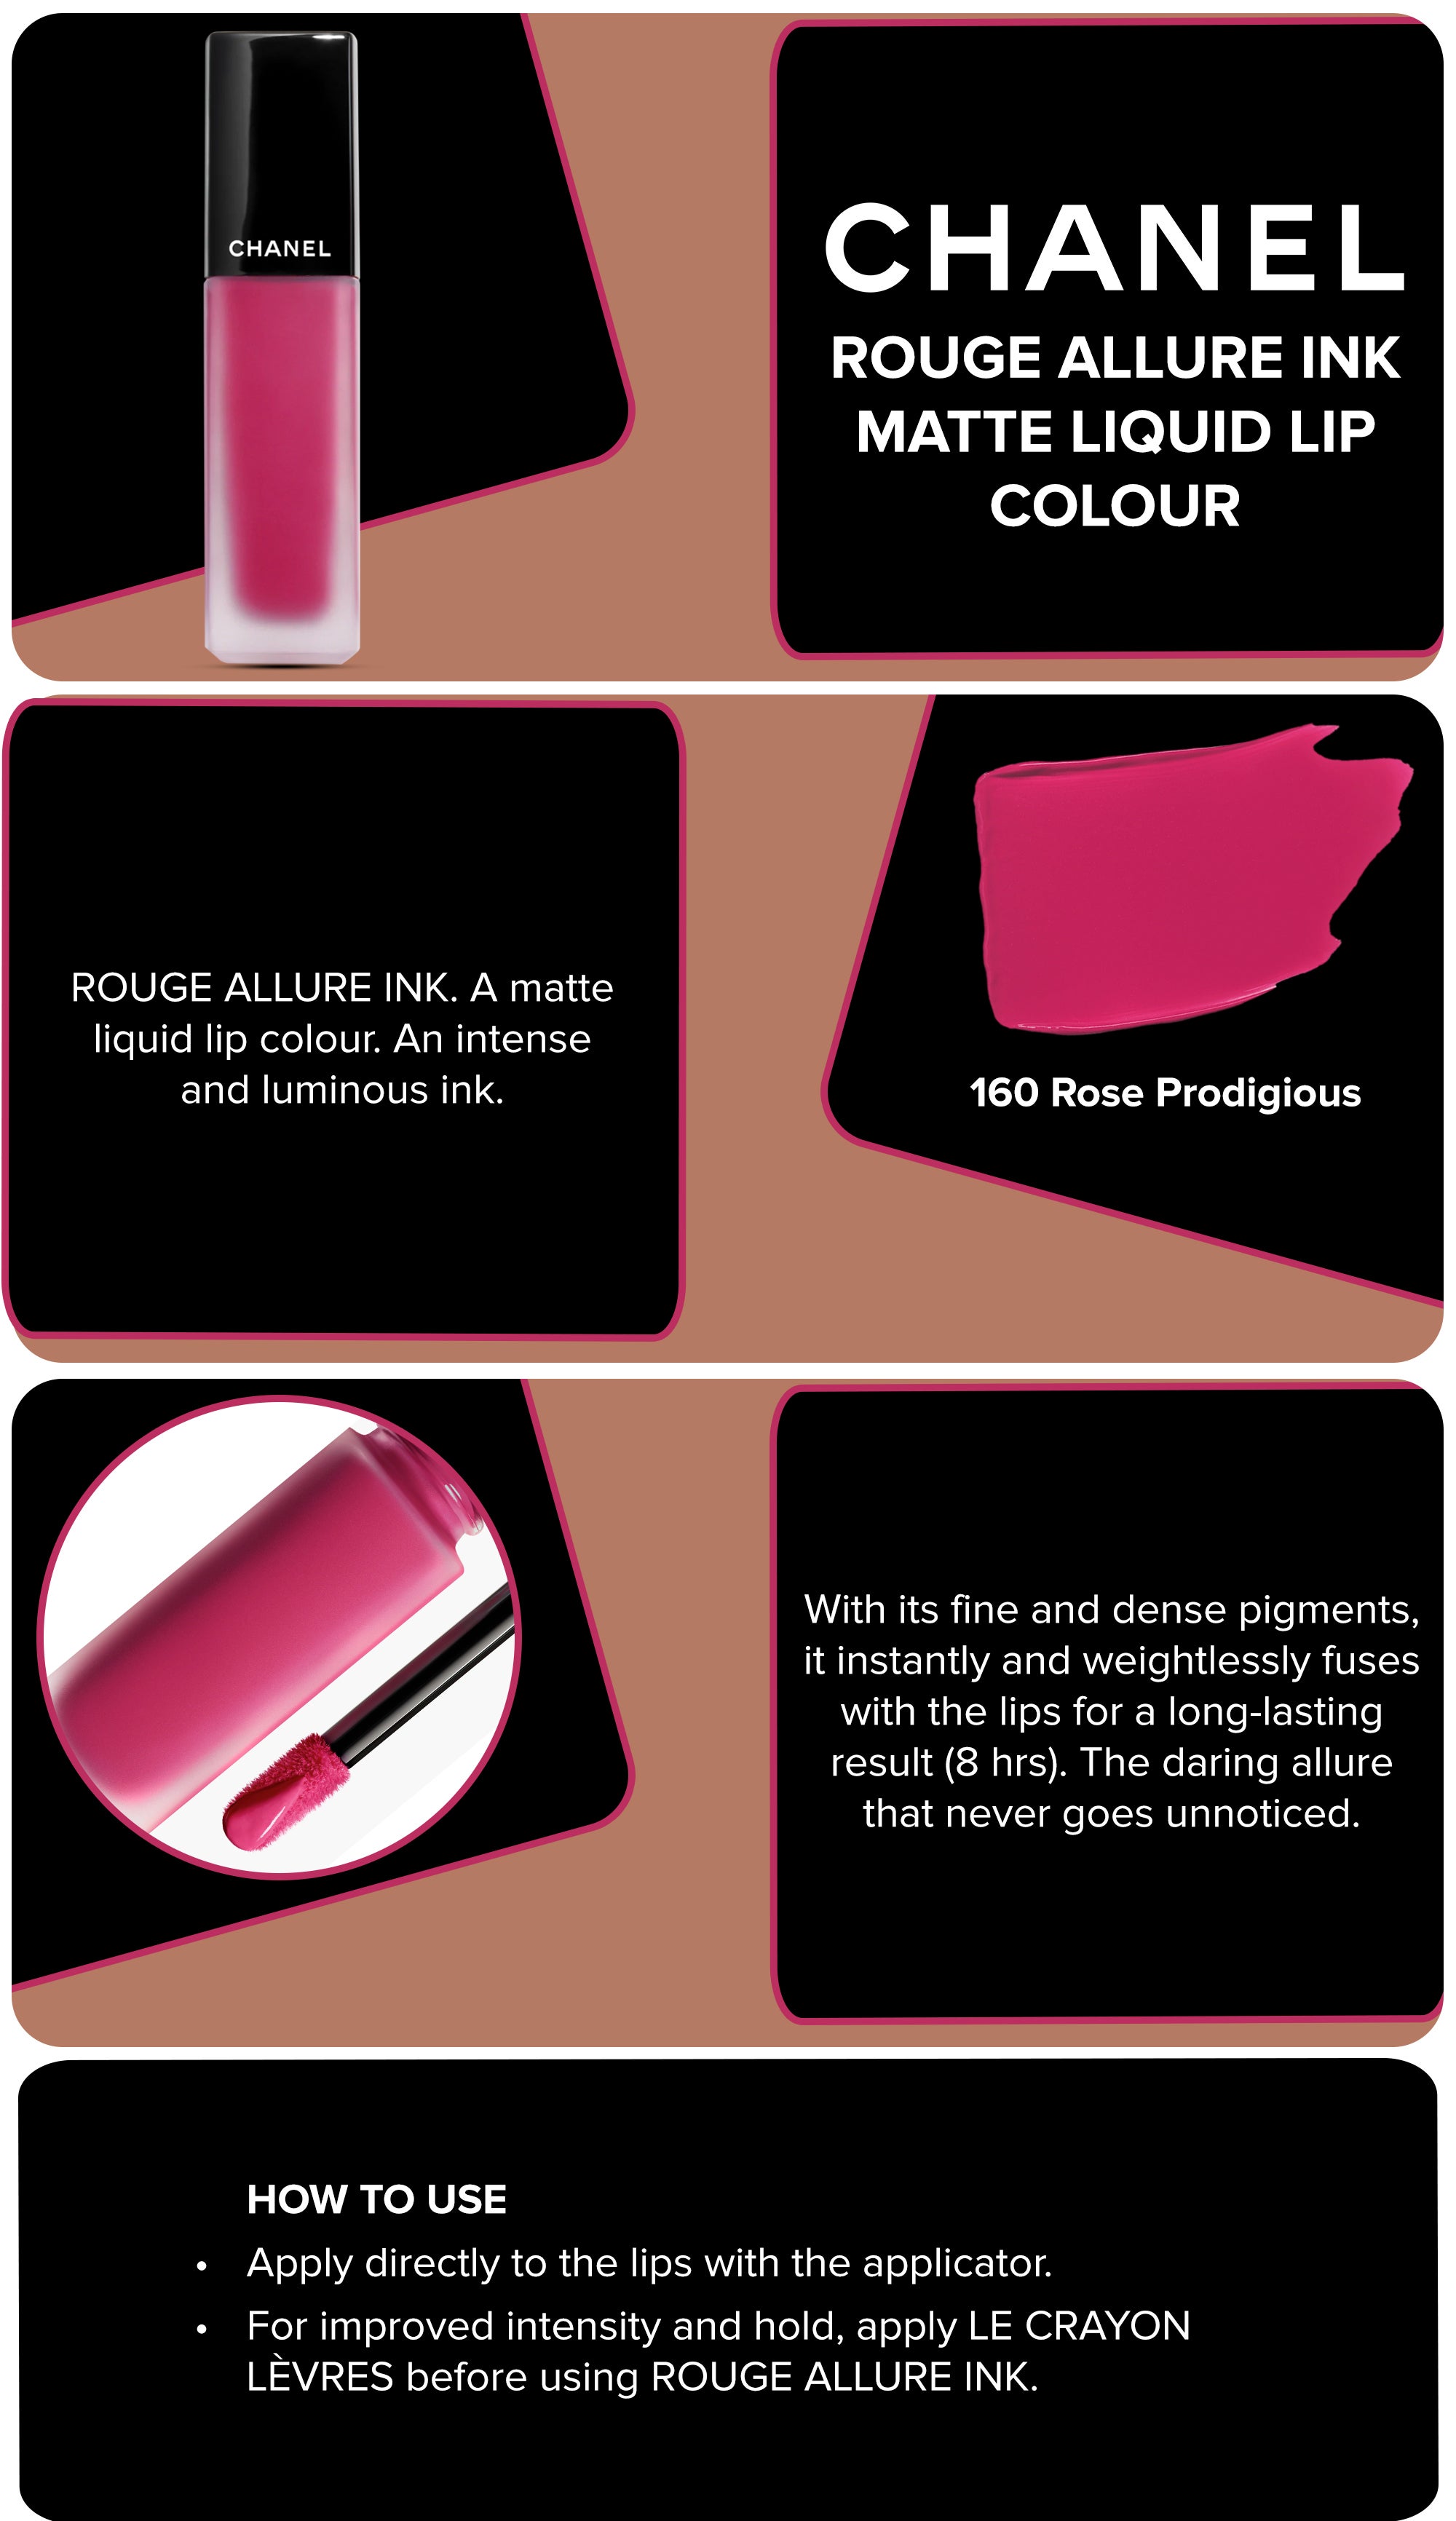 CHANEL pink (ROUGE ALLURE INK) Matte Liquid Lip Colour